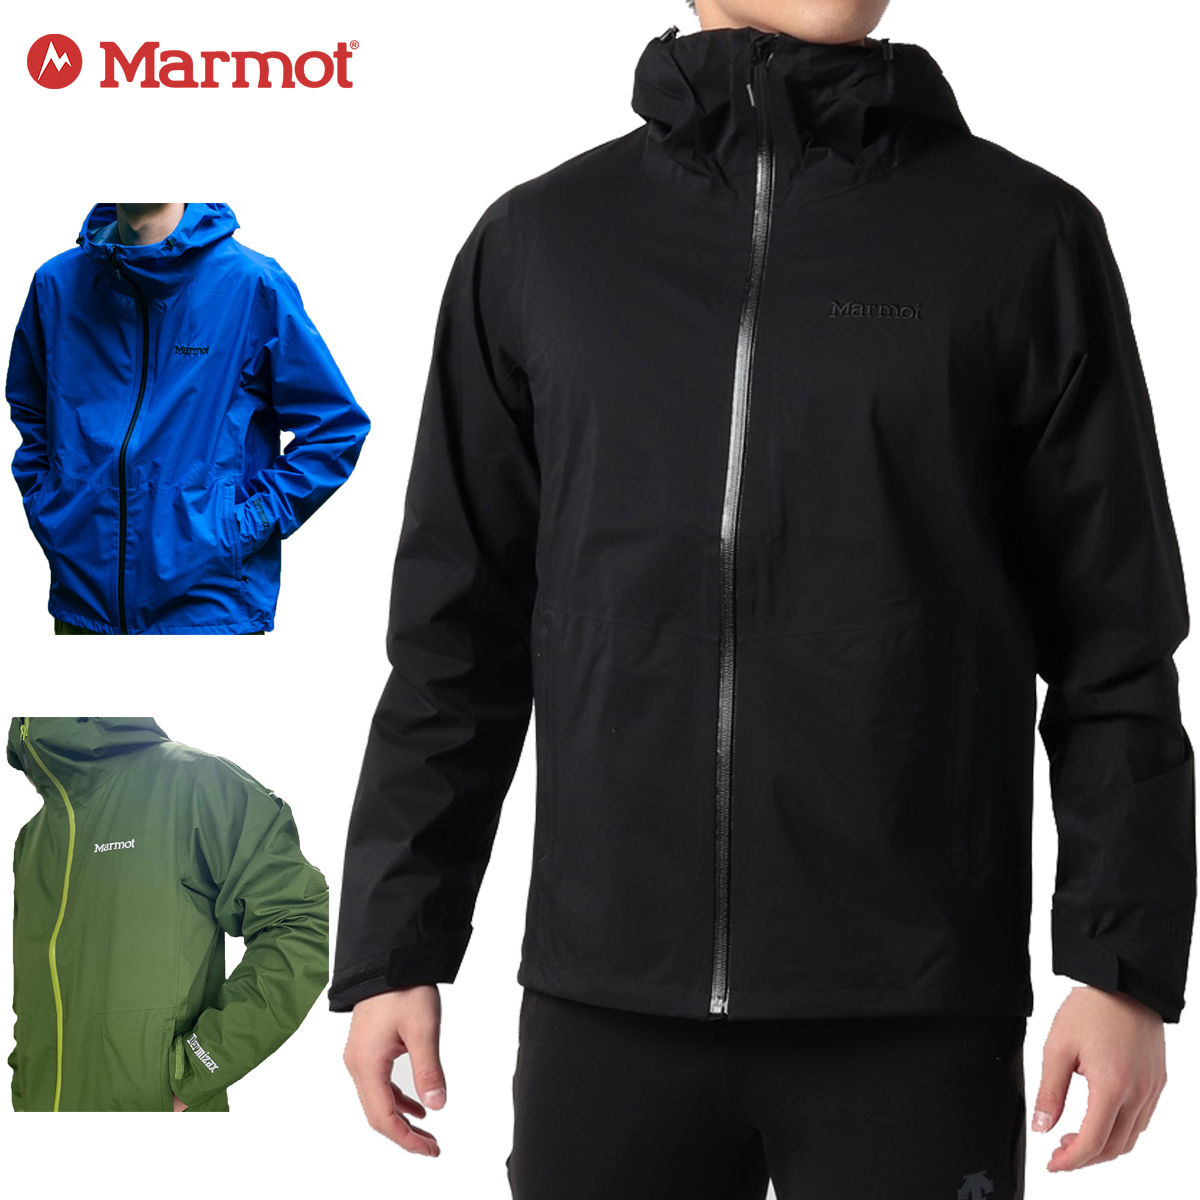 楽天市場】 スキーウェア > 【Marmot】マーモット スキーウェア 